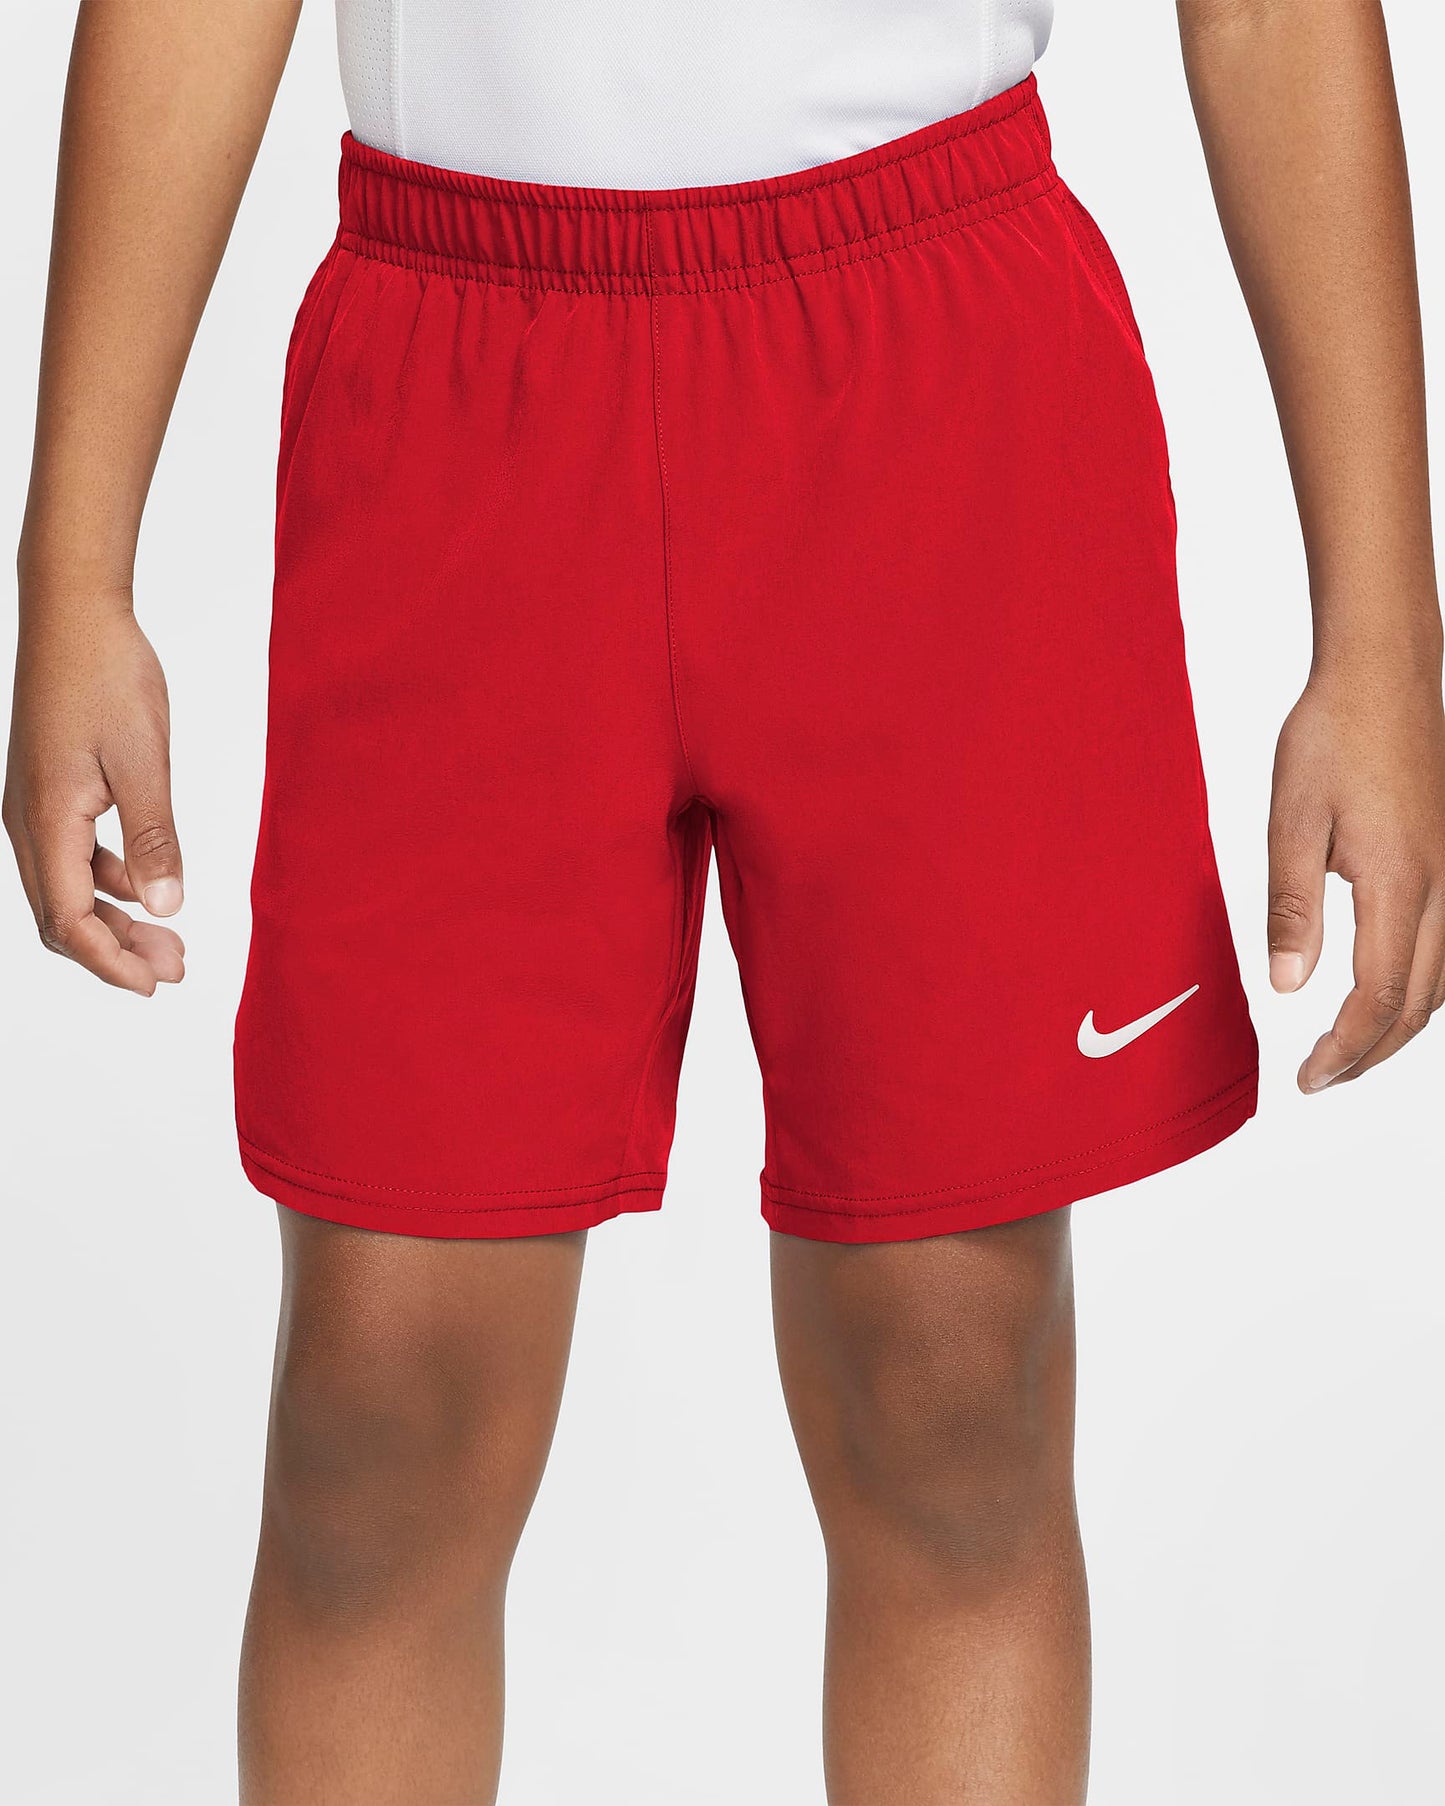 NikeCourt Dri Fit Flex Ace Short (Boy's) - Red